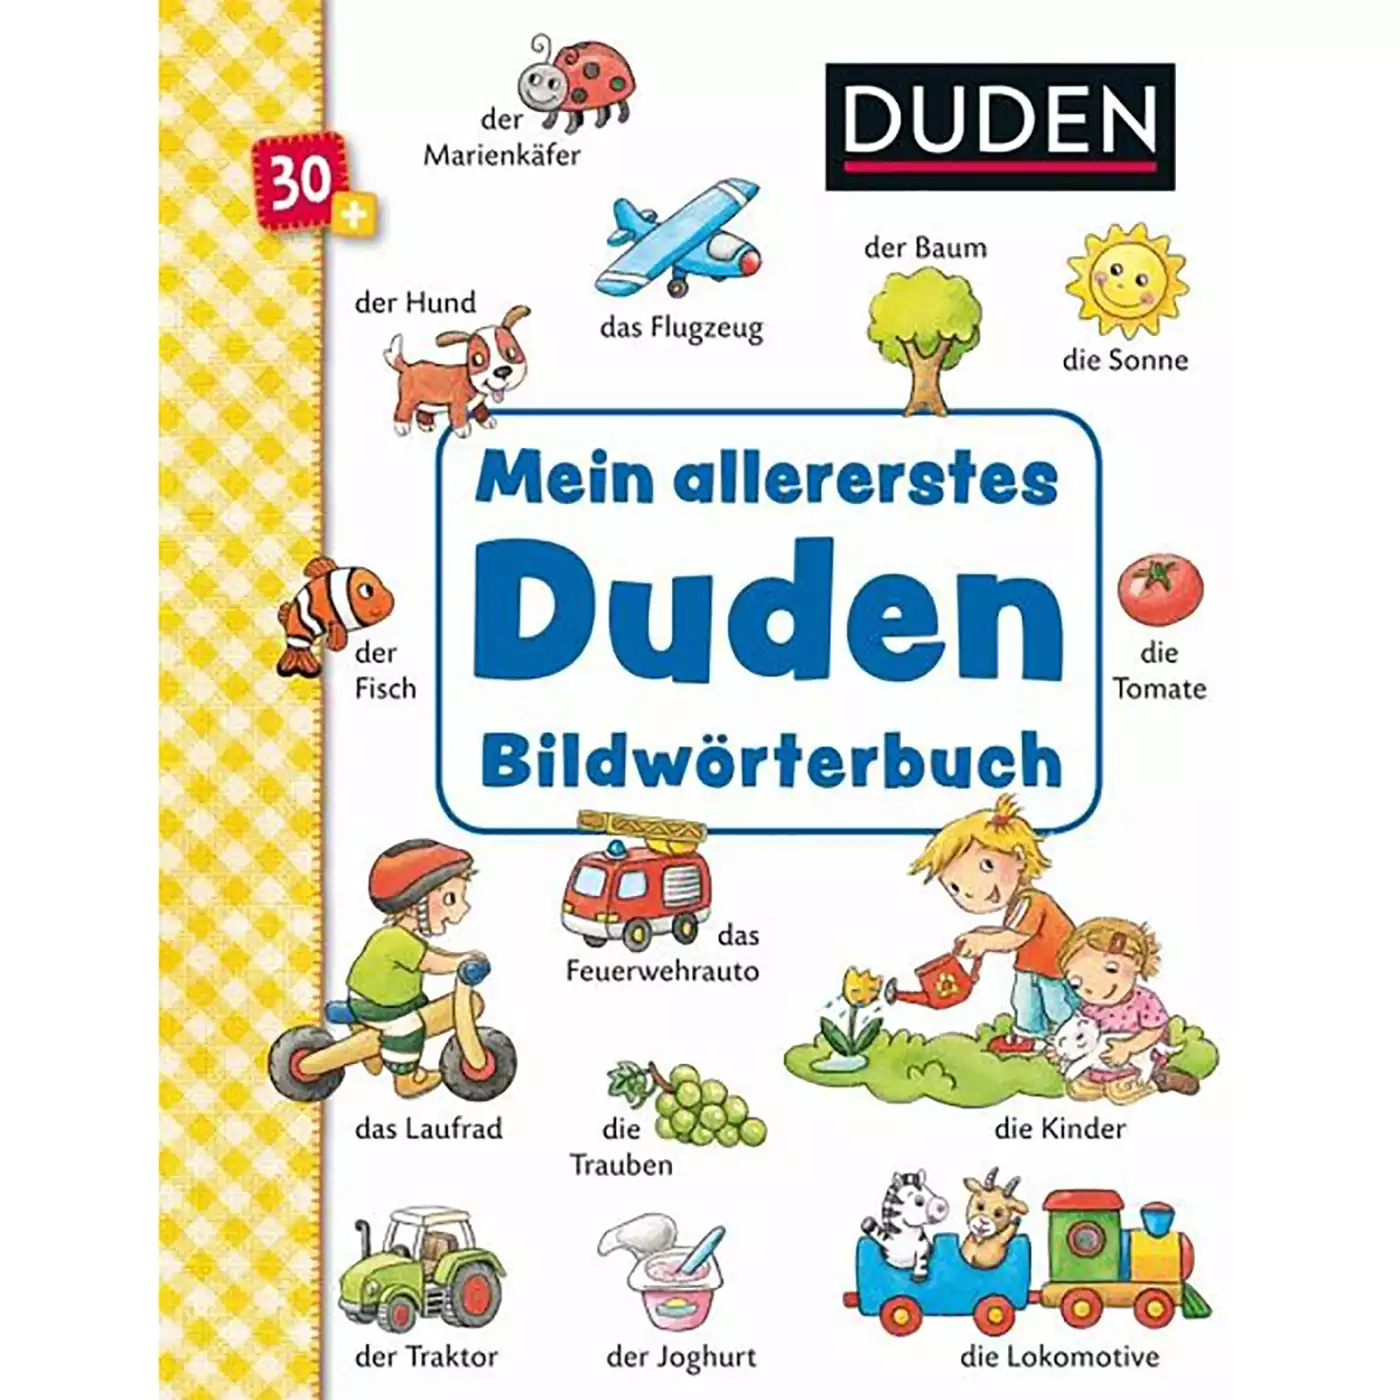 Mein allererstes Duden Bildwörterbuch Sauerländer 2000577522002 1